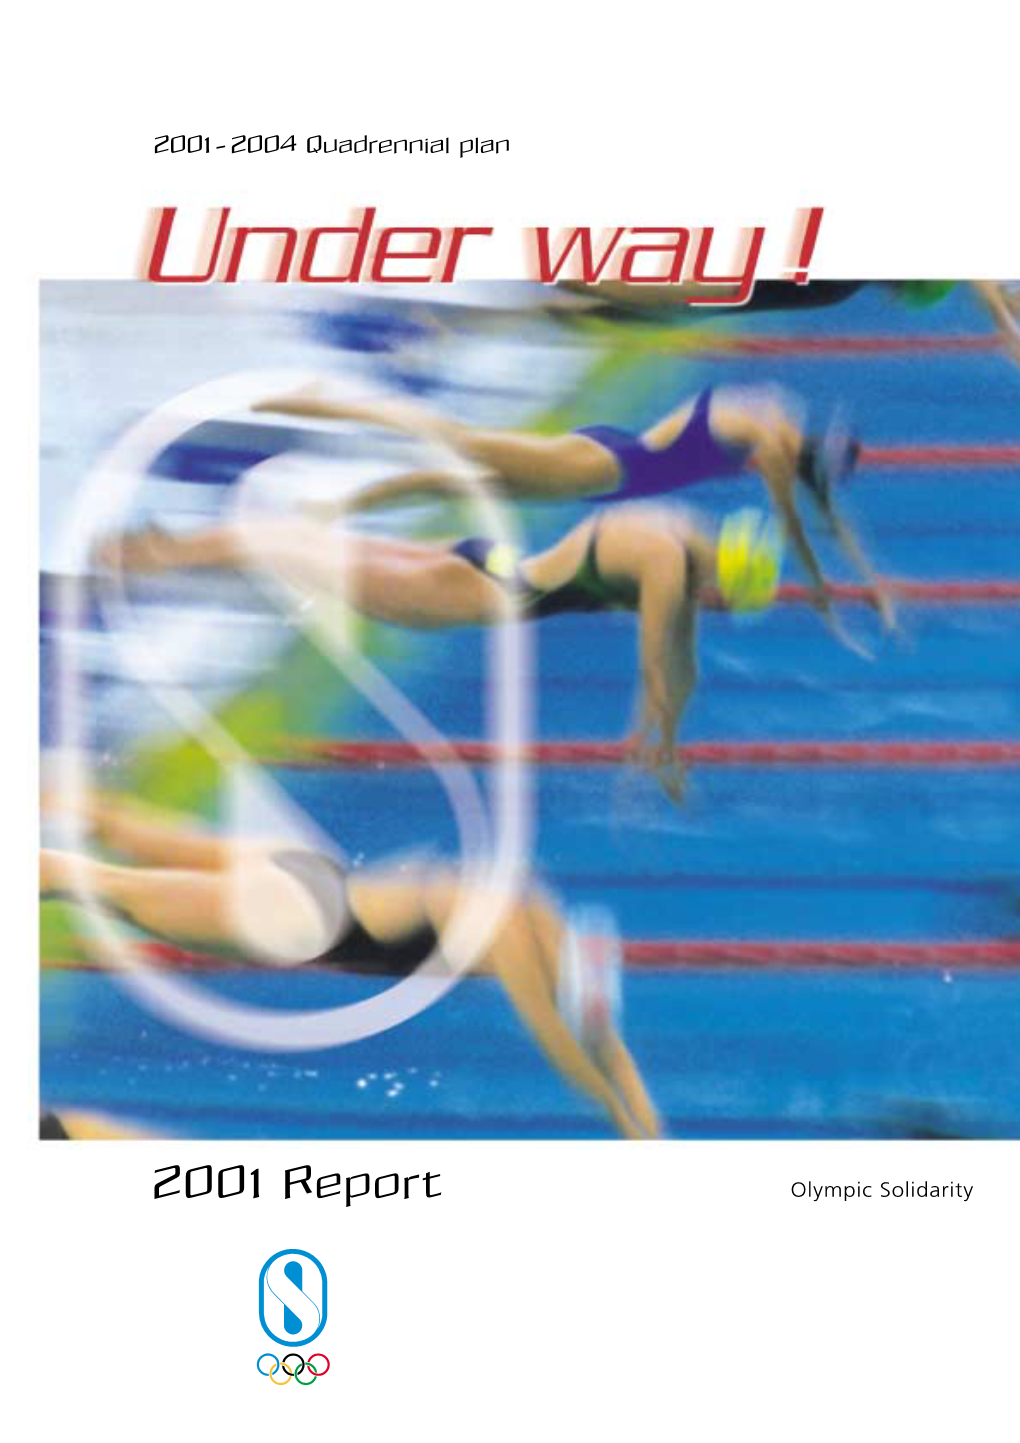 2001 Report Olympic Solidarity